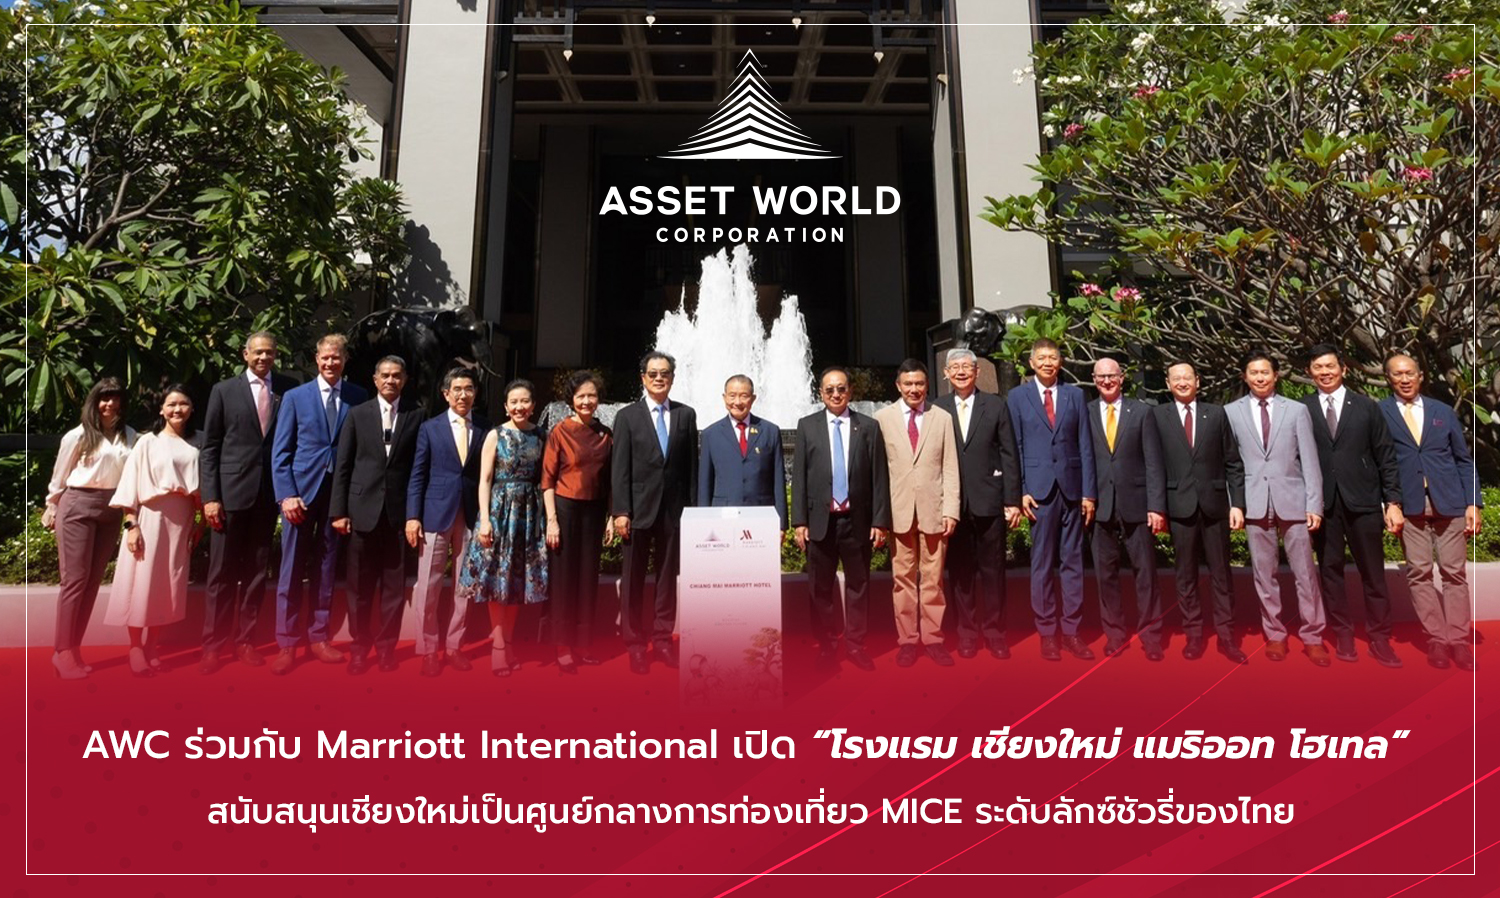 AWC ร่วมกับ Marriott International เปิด โรงแรม เชียงใหม่ แมริออท โฮเทล สนับสนุนเชียงใหม่เป็นศูนย์กลางการท่องเที่ยว MICE ระดับลักซ์ชัวรี่ของไทย